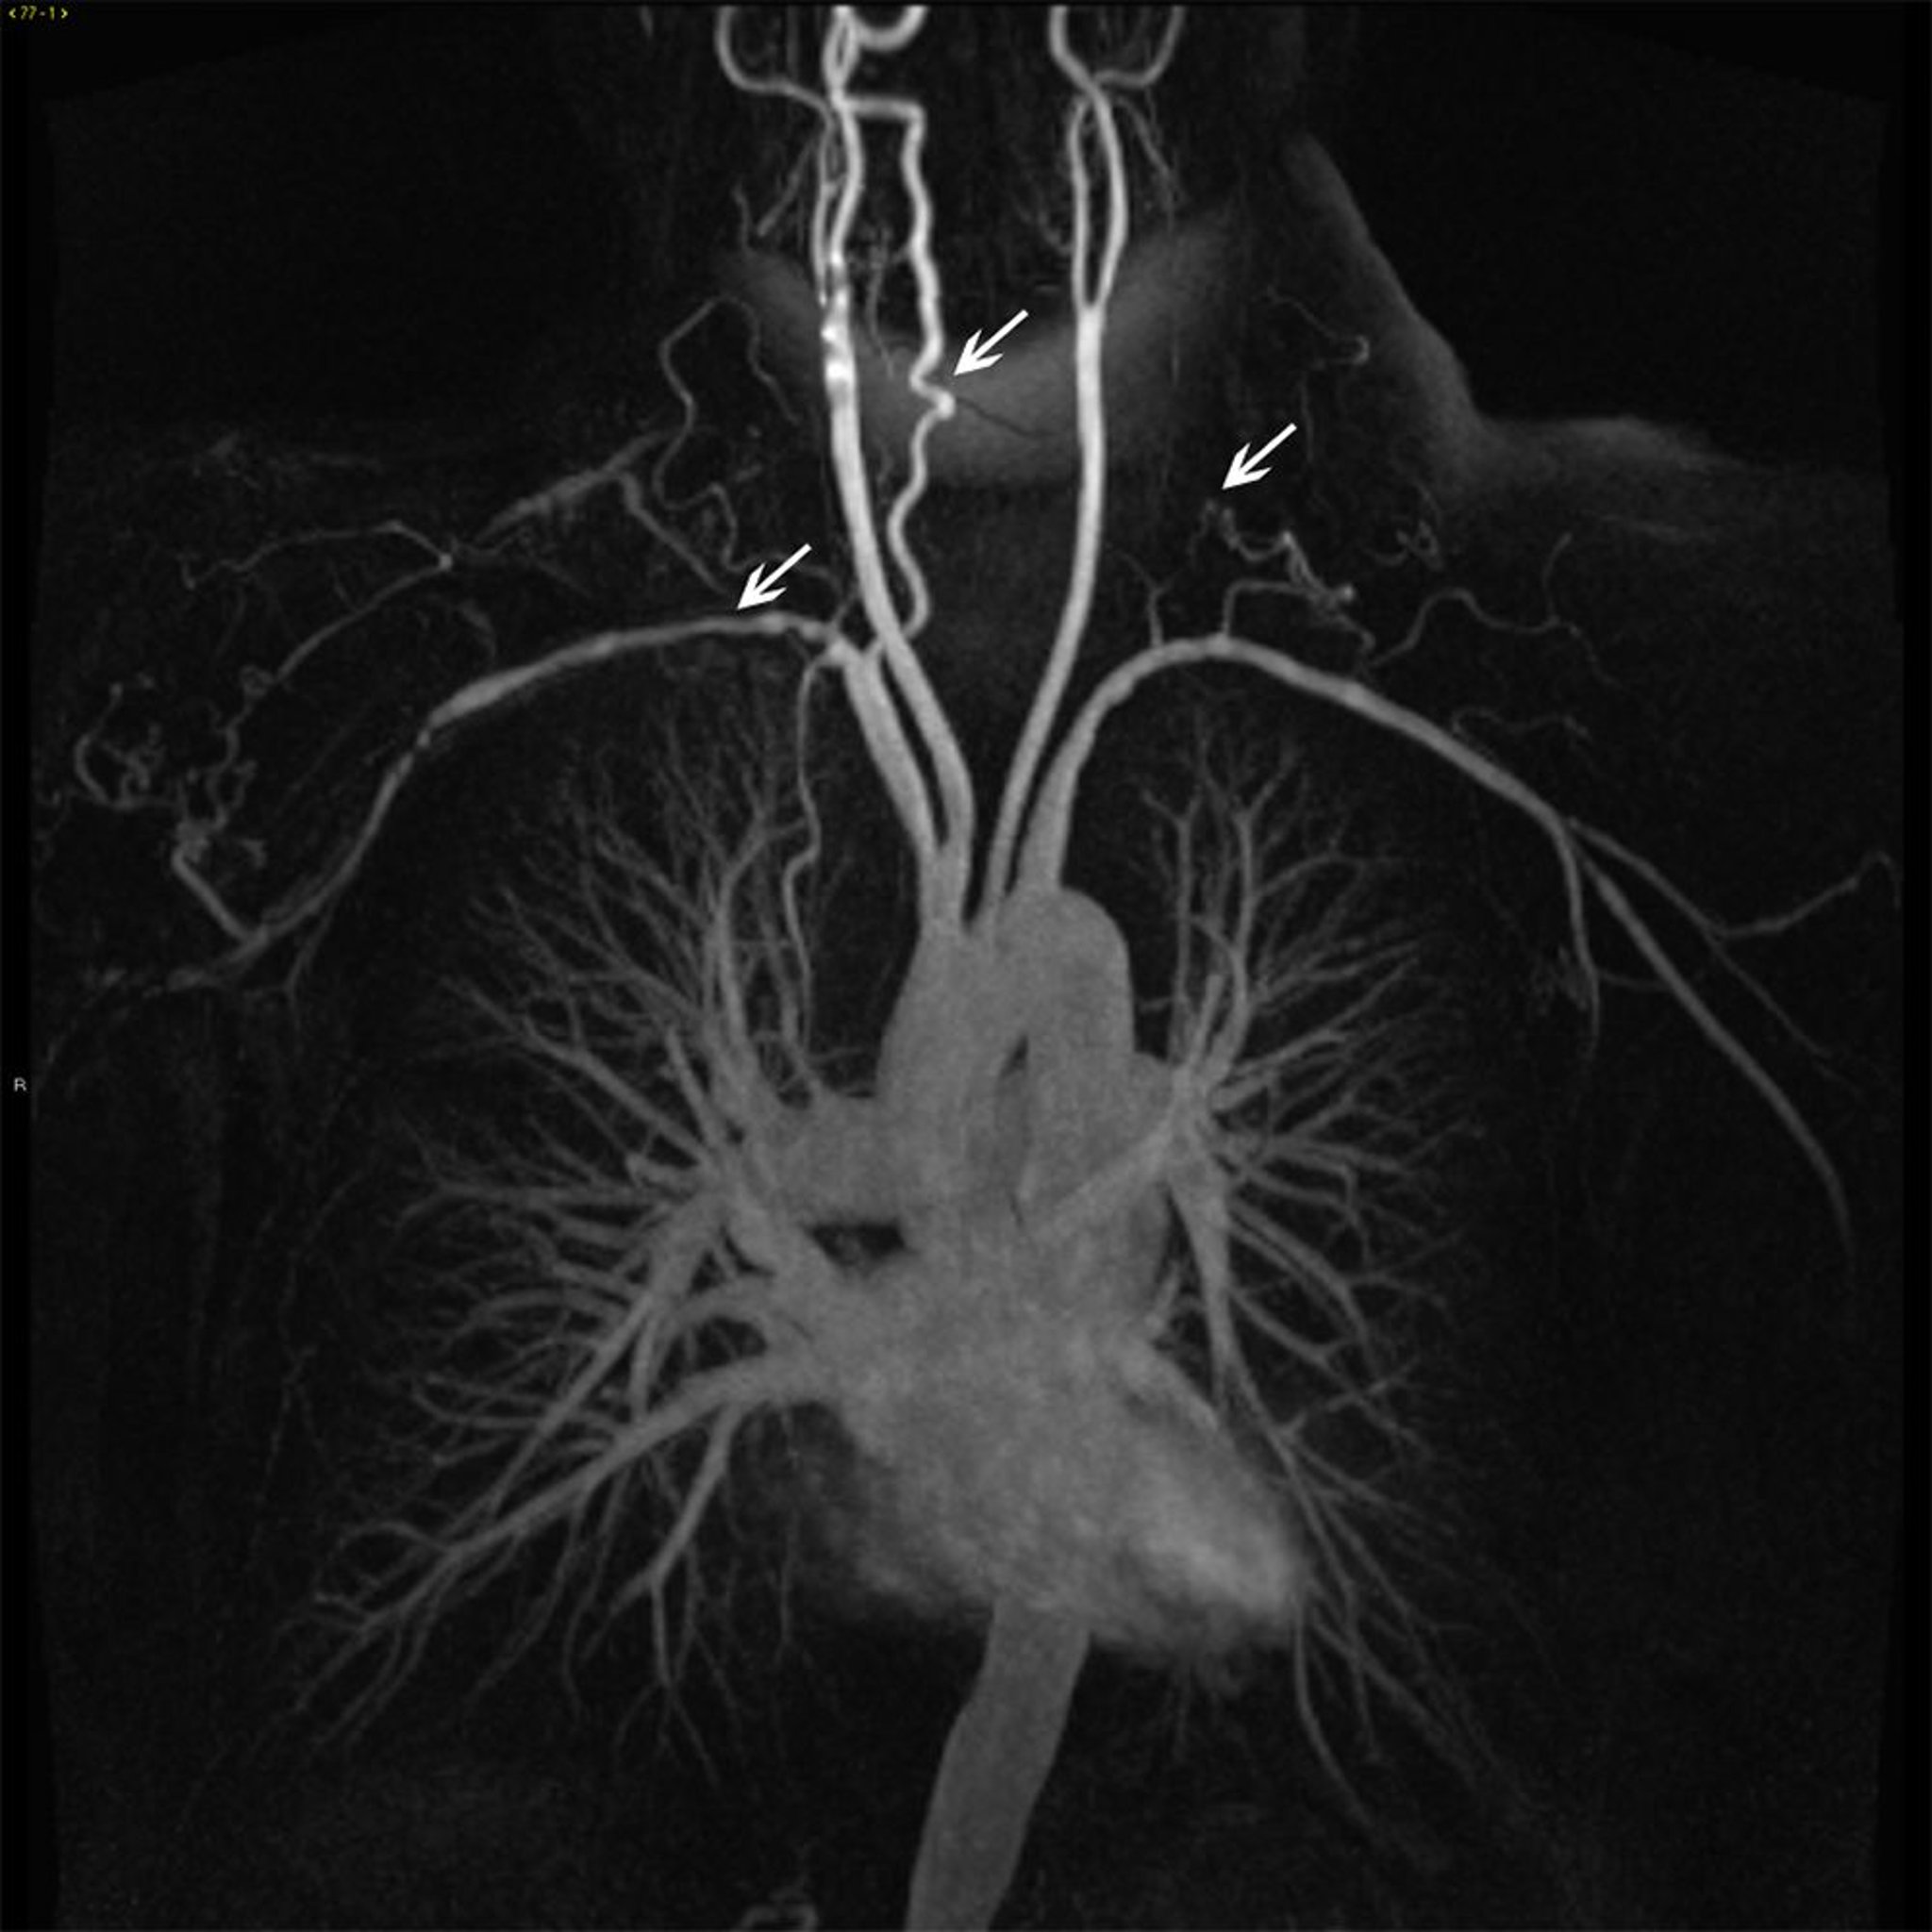 Ramas de aorta torácica ascendente en un paciente con arteritis de Takayasu